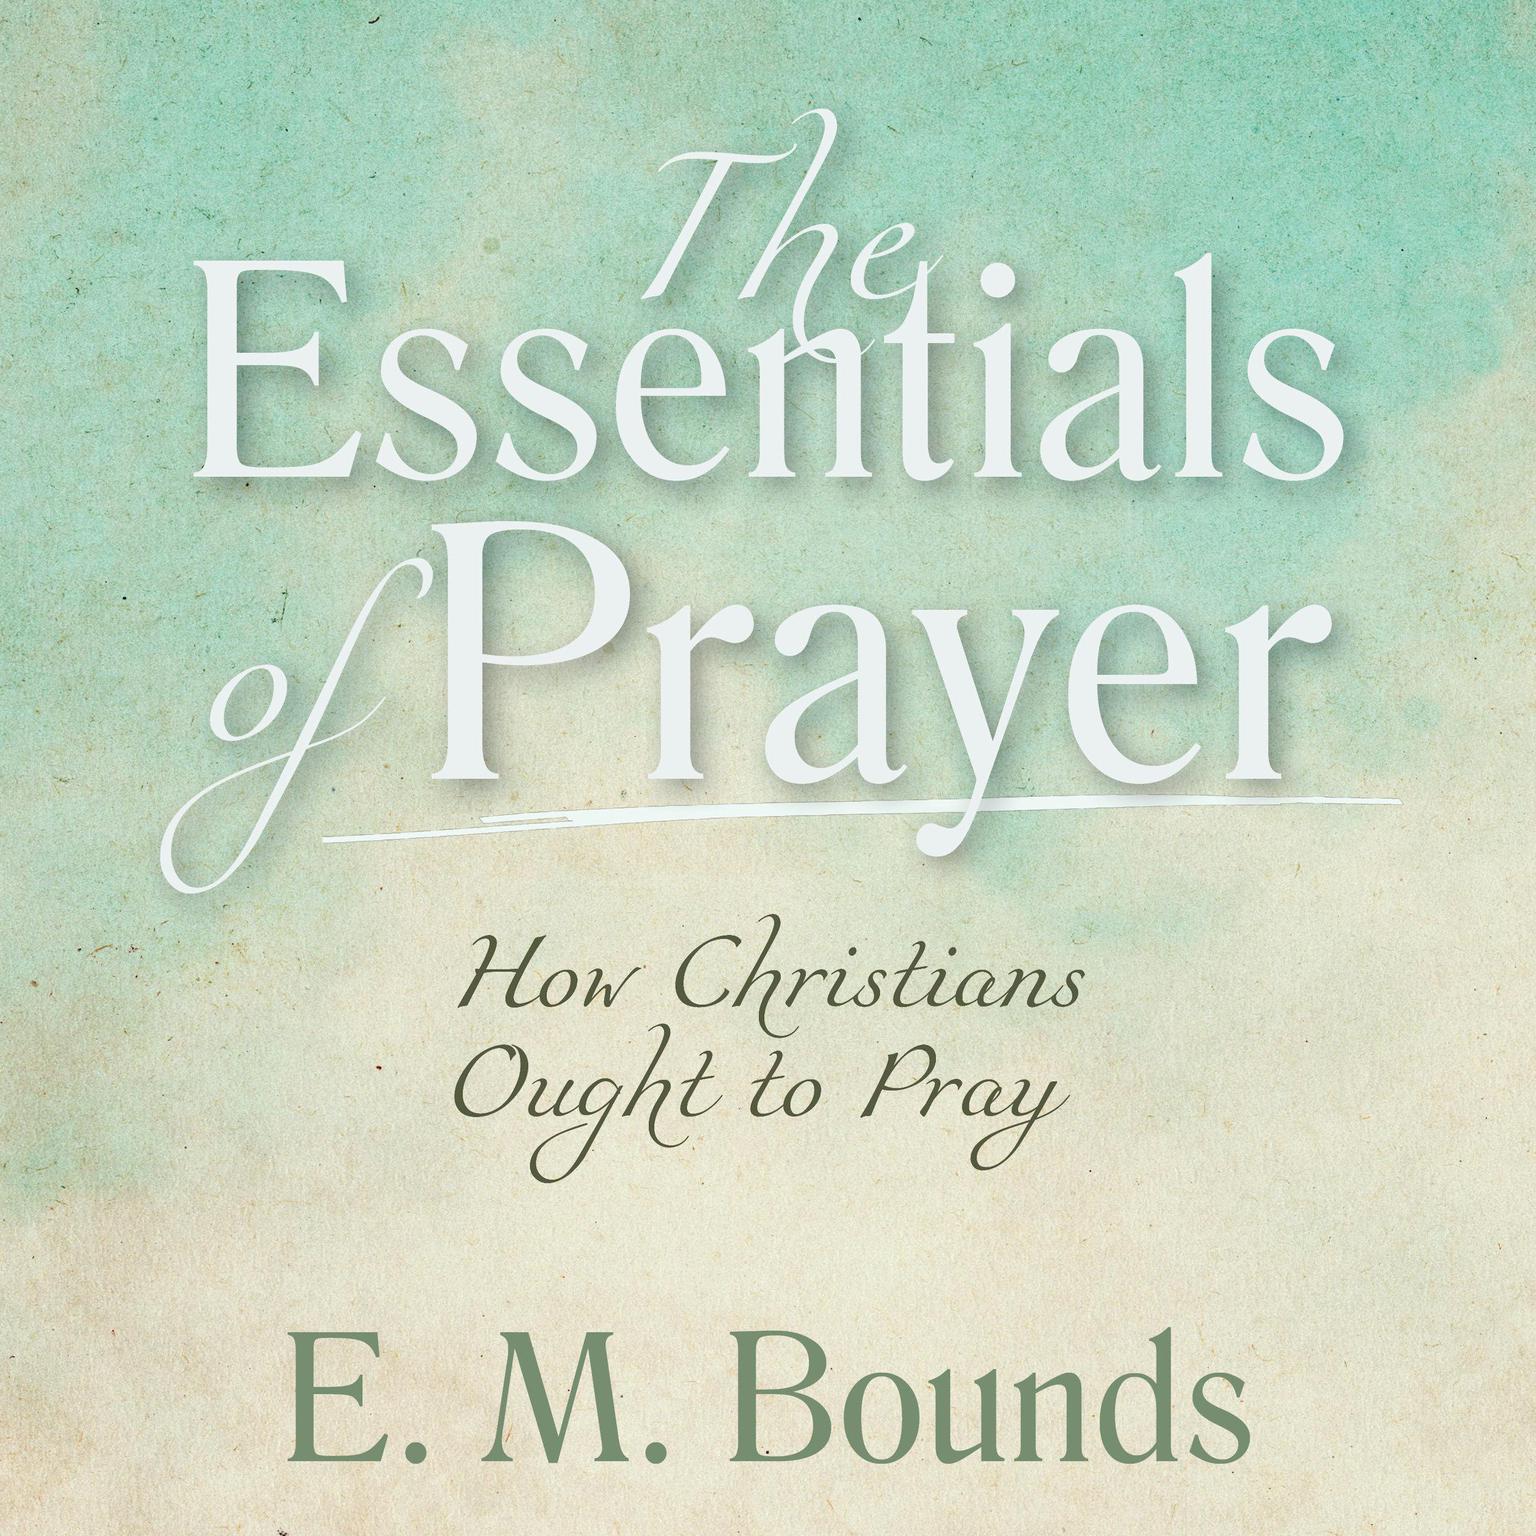 The Essentials of Prayer: How Christians Ought to Pray: How Christians Ought to Pray Audiobook, by E. M. Bounds